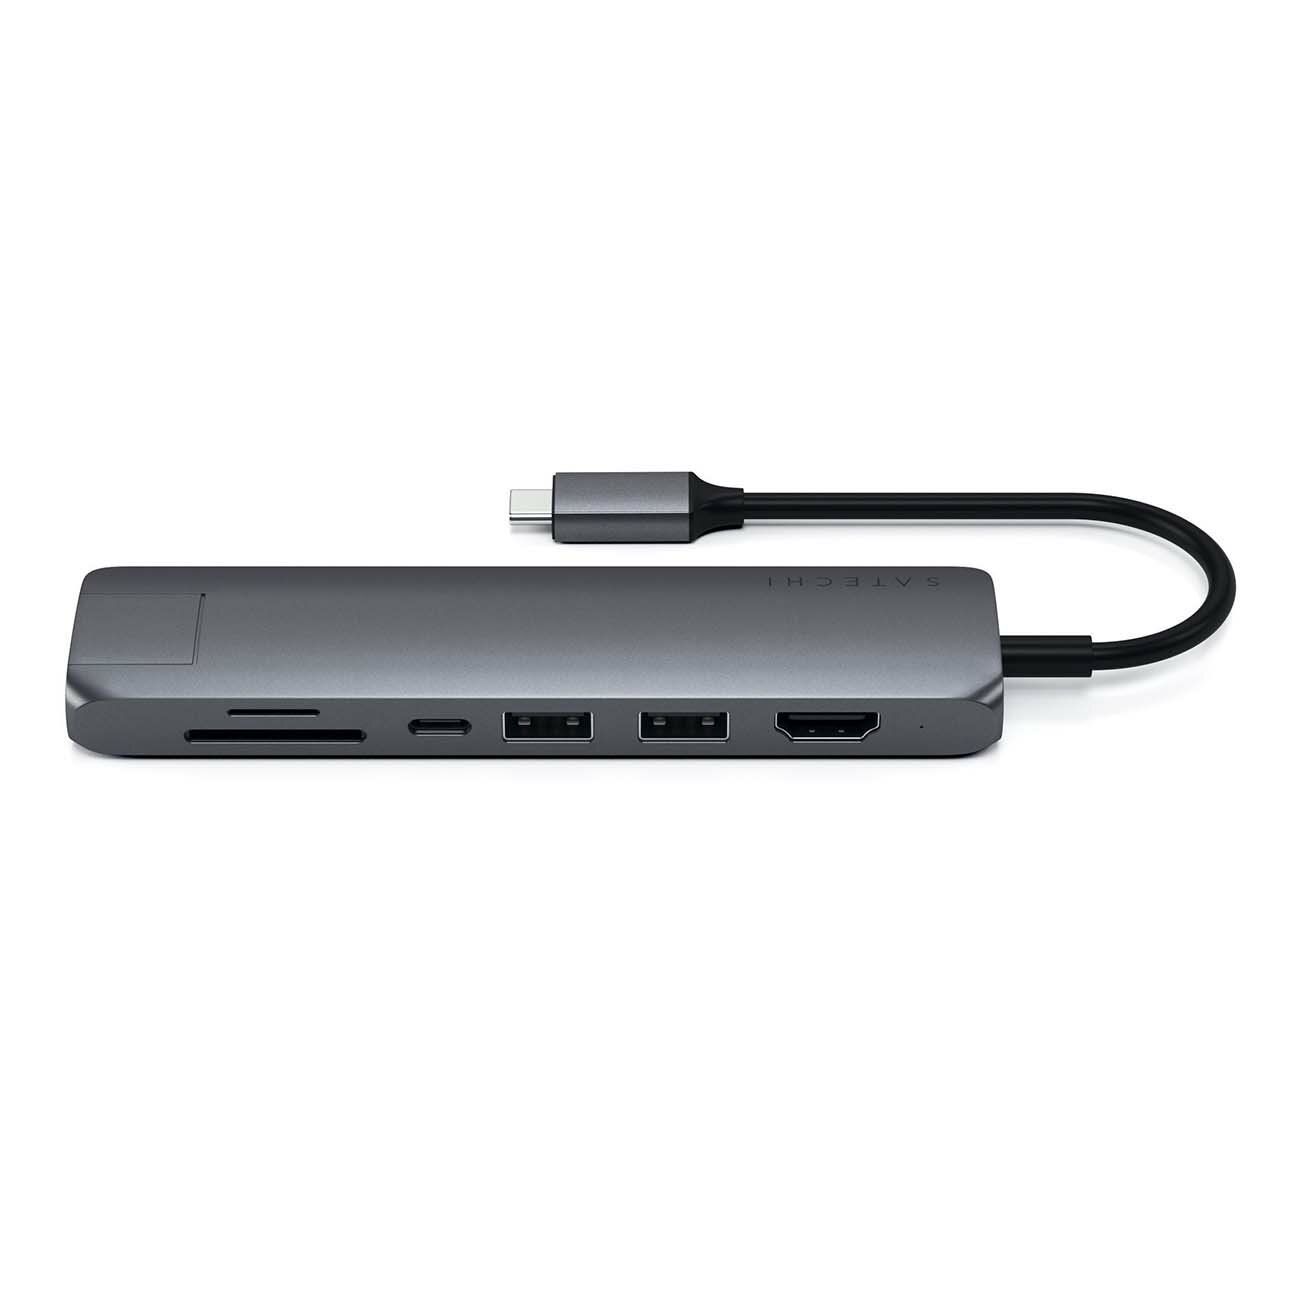 USB-концентратор Satechi SLIM MULTI-PORT (ST-UCSMA3) разъемов: 3